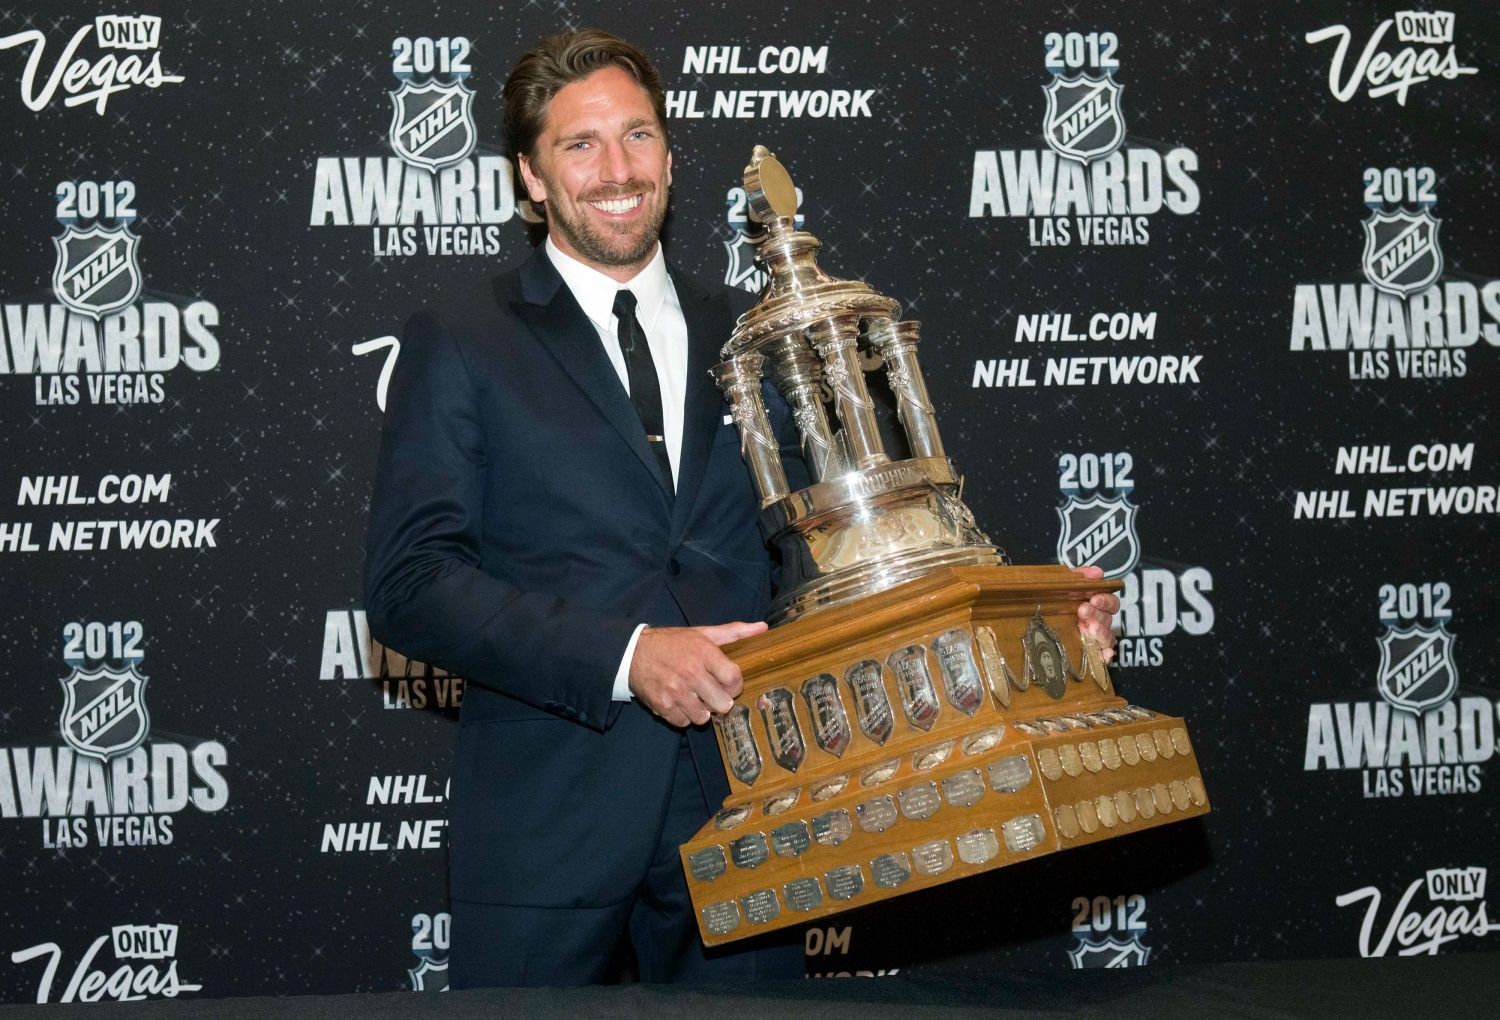 Hokejový brankář New York Rangers Henrik Lundqvist pózuje s Vezina Trophy během předávání trofejí NHL v Las Vegas za sezónu 2011/12